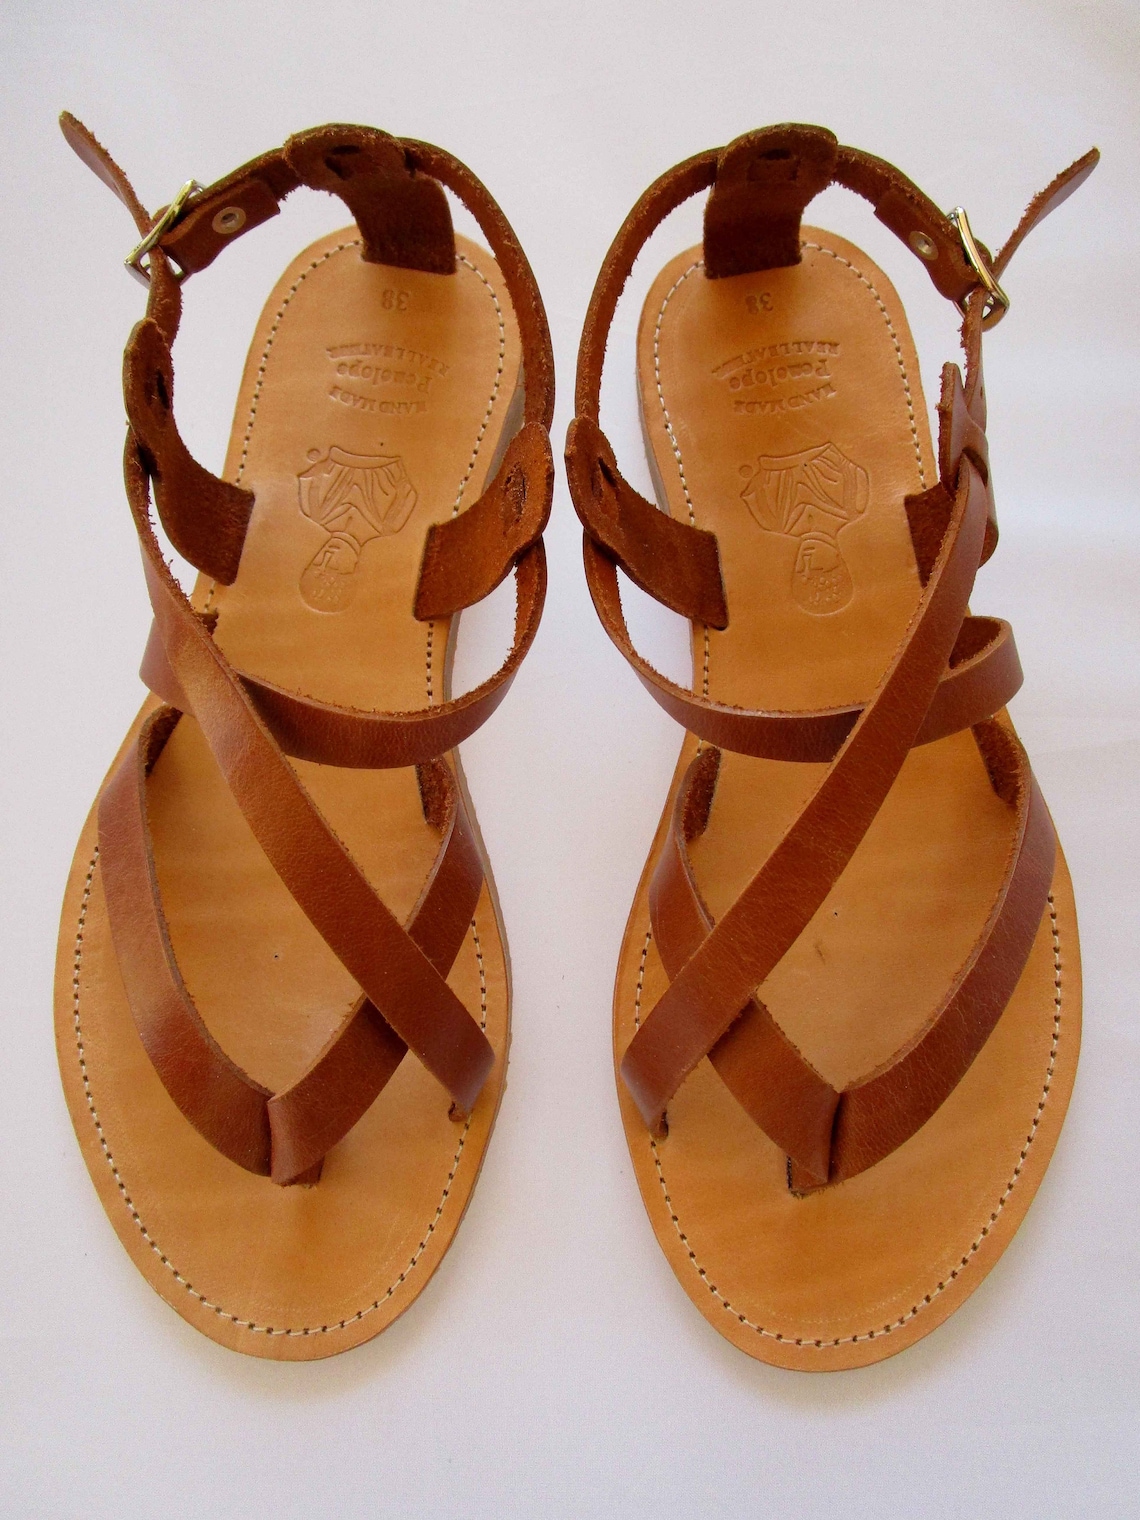 Leather sandals Sandals Greek sandals Leather sandals | Etsy